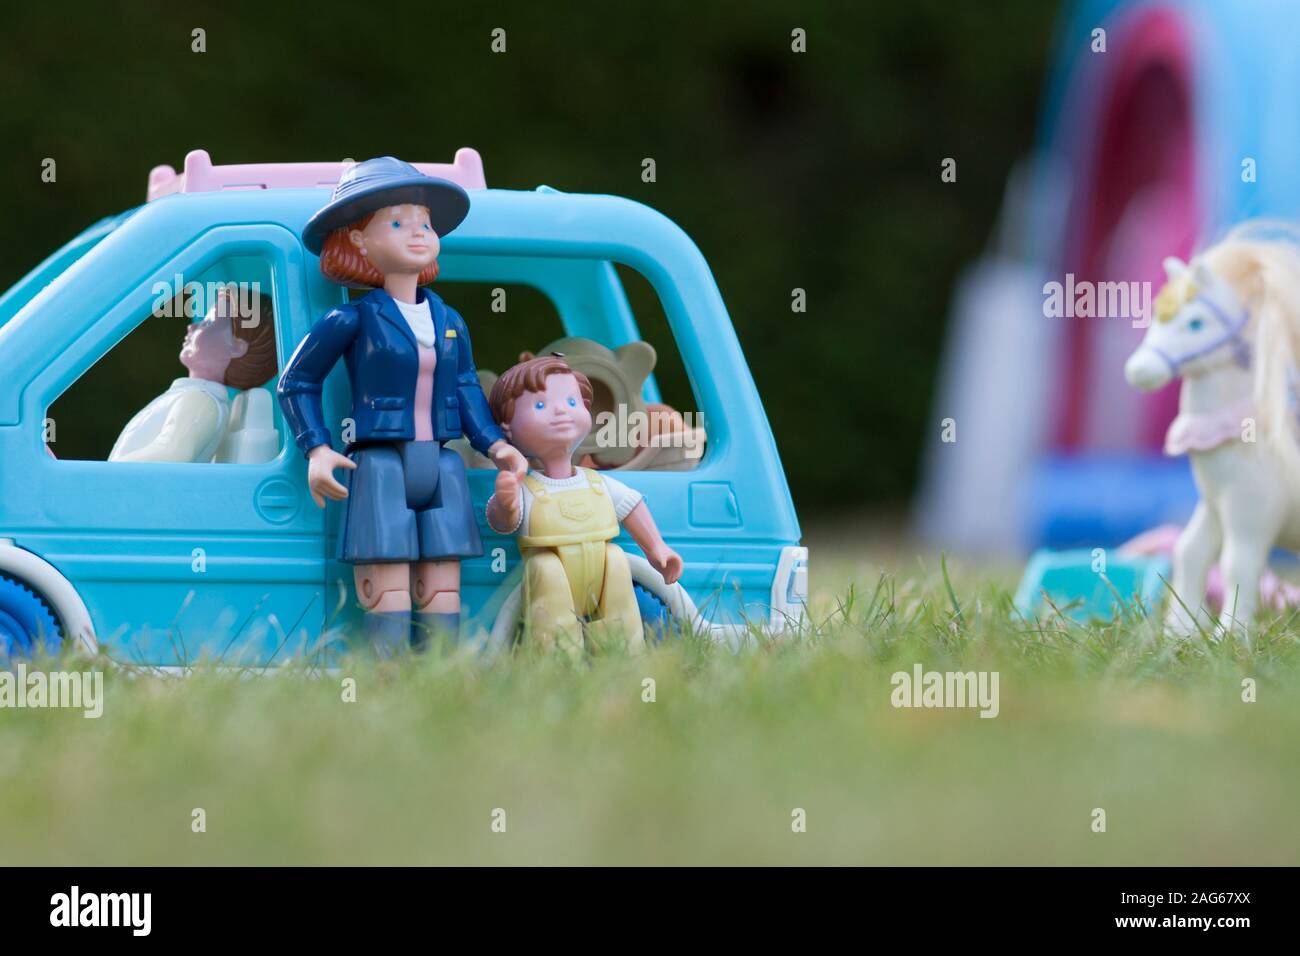 Nahaufnahme der bunten Spielzeugszene auf Gras angeordnet. Stockfoto